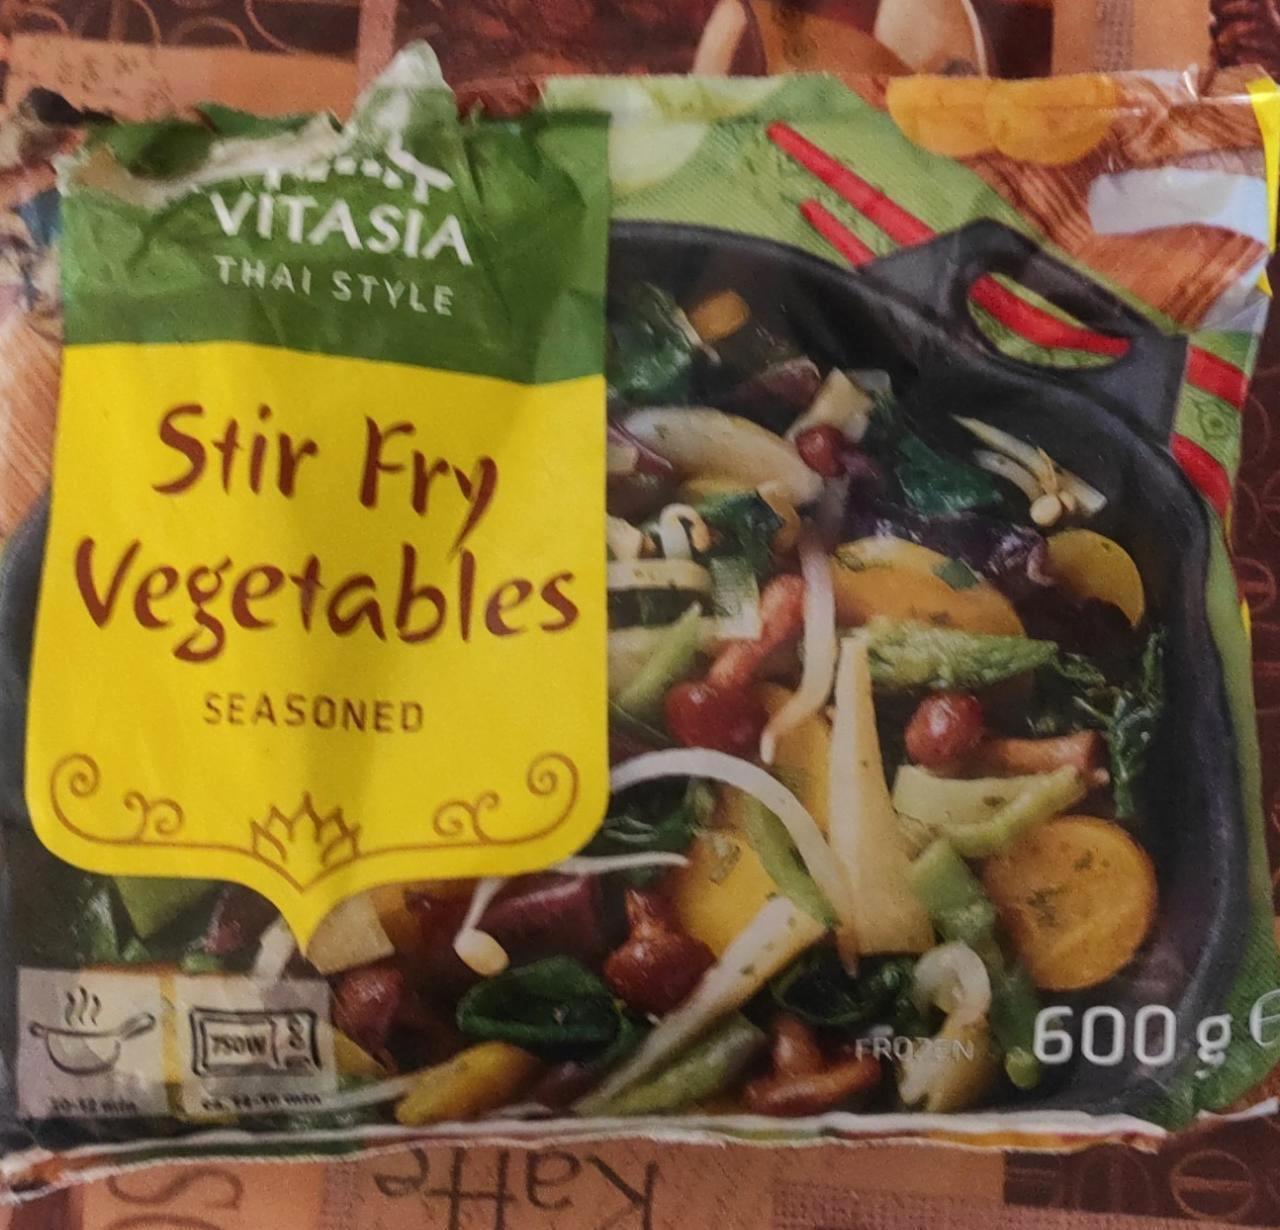 Képek - Stir fry vegetable seasoned Vitasia Thai style